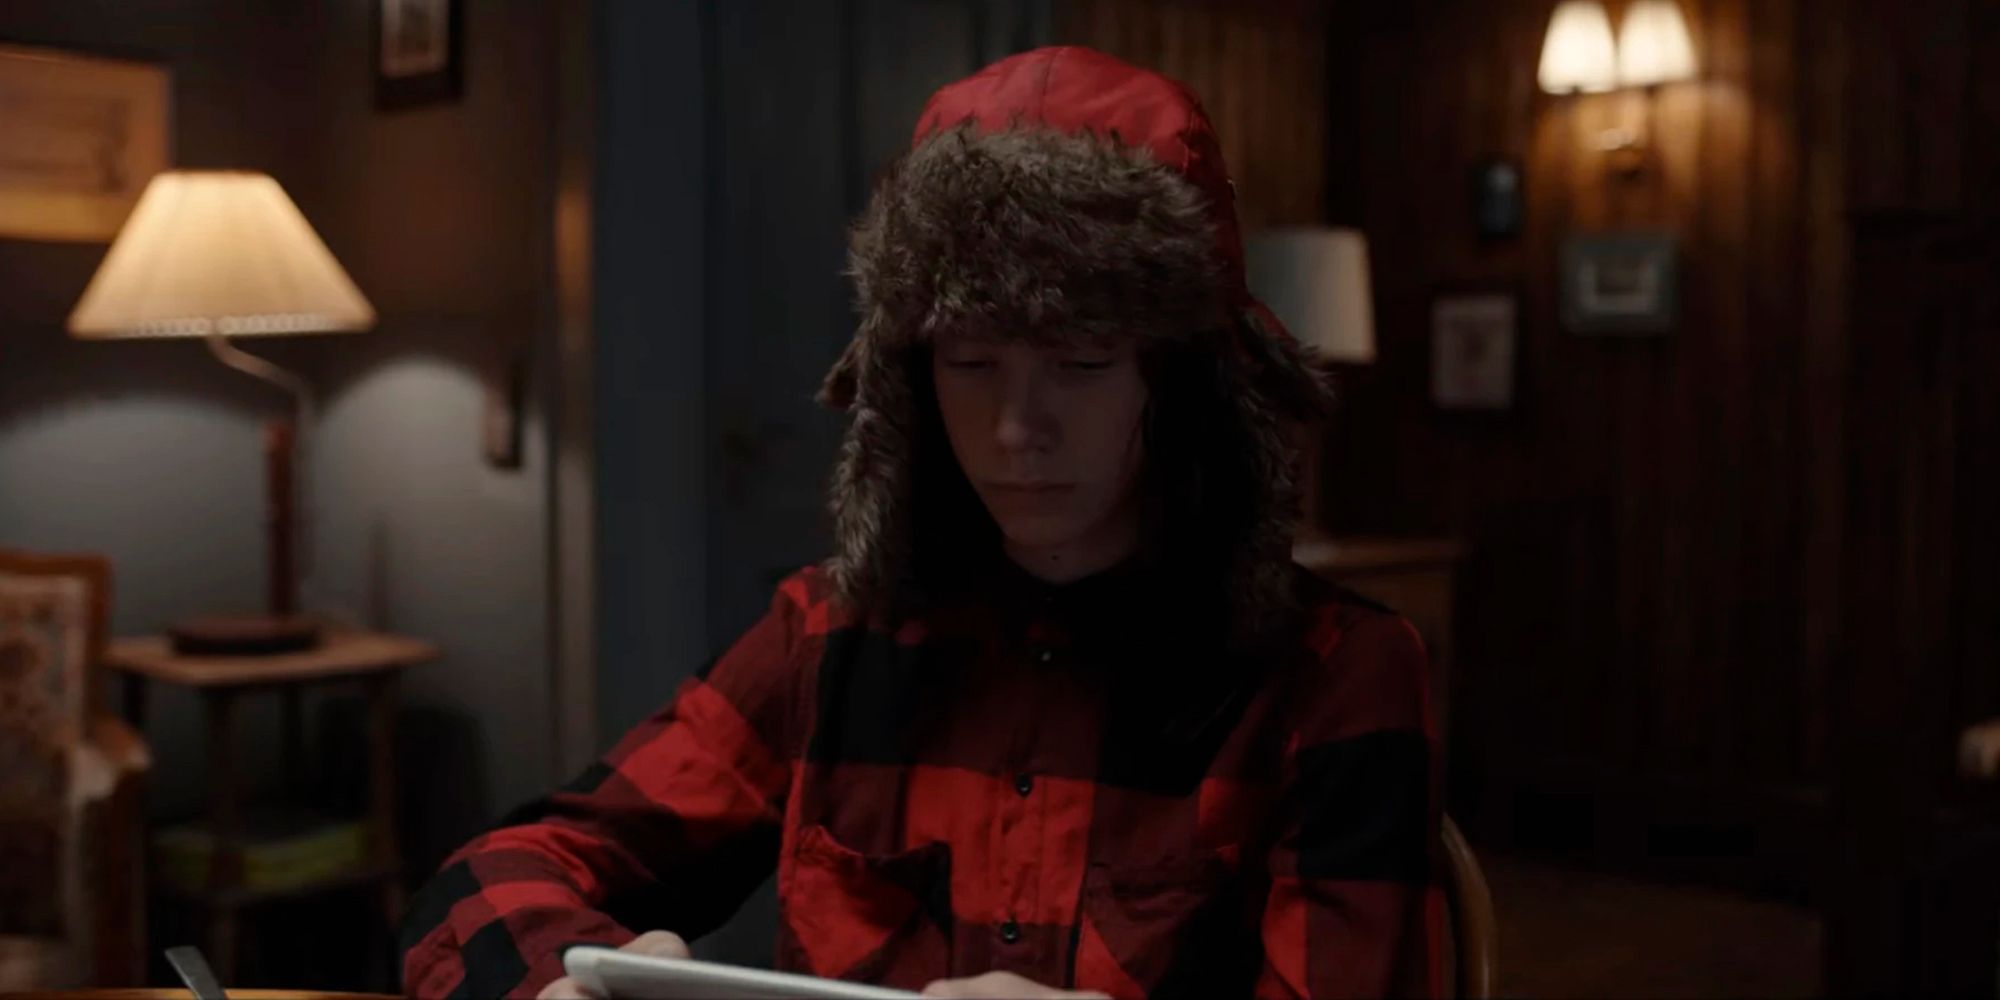 Daan Lennard Liebrenz plays young Mikkel wearing a winter hate on Netflix's Dark